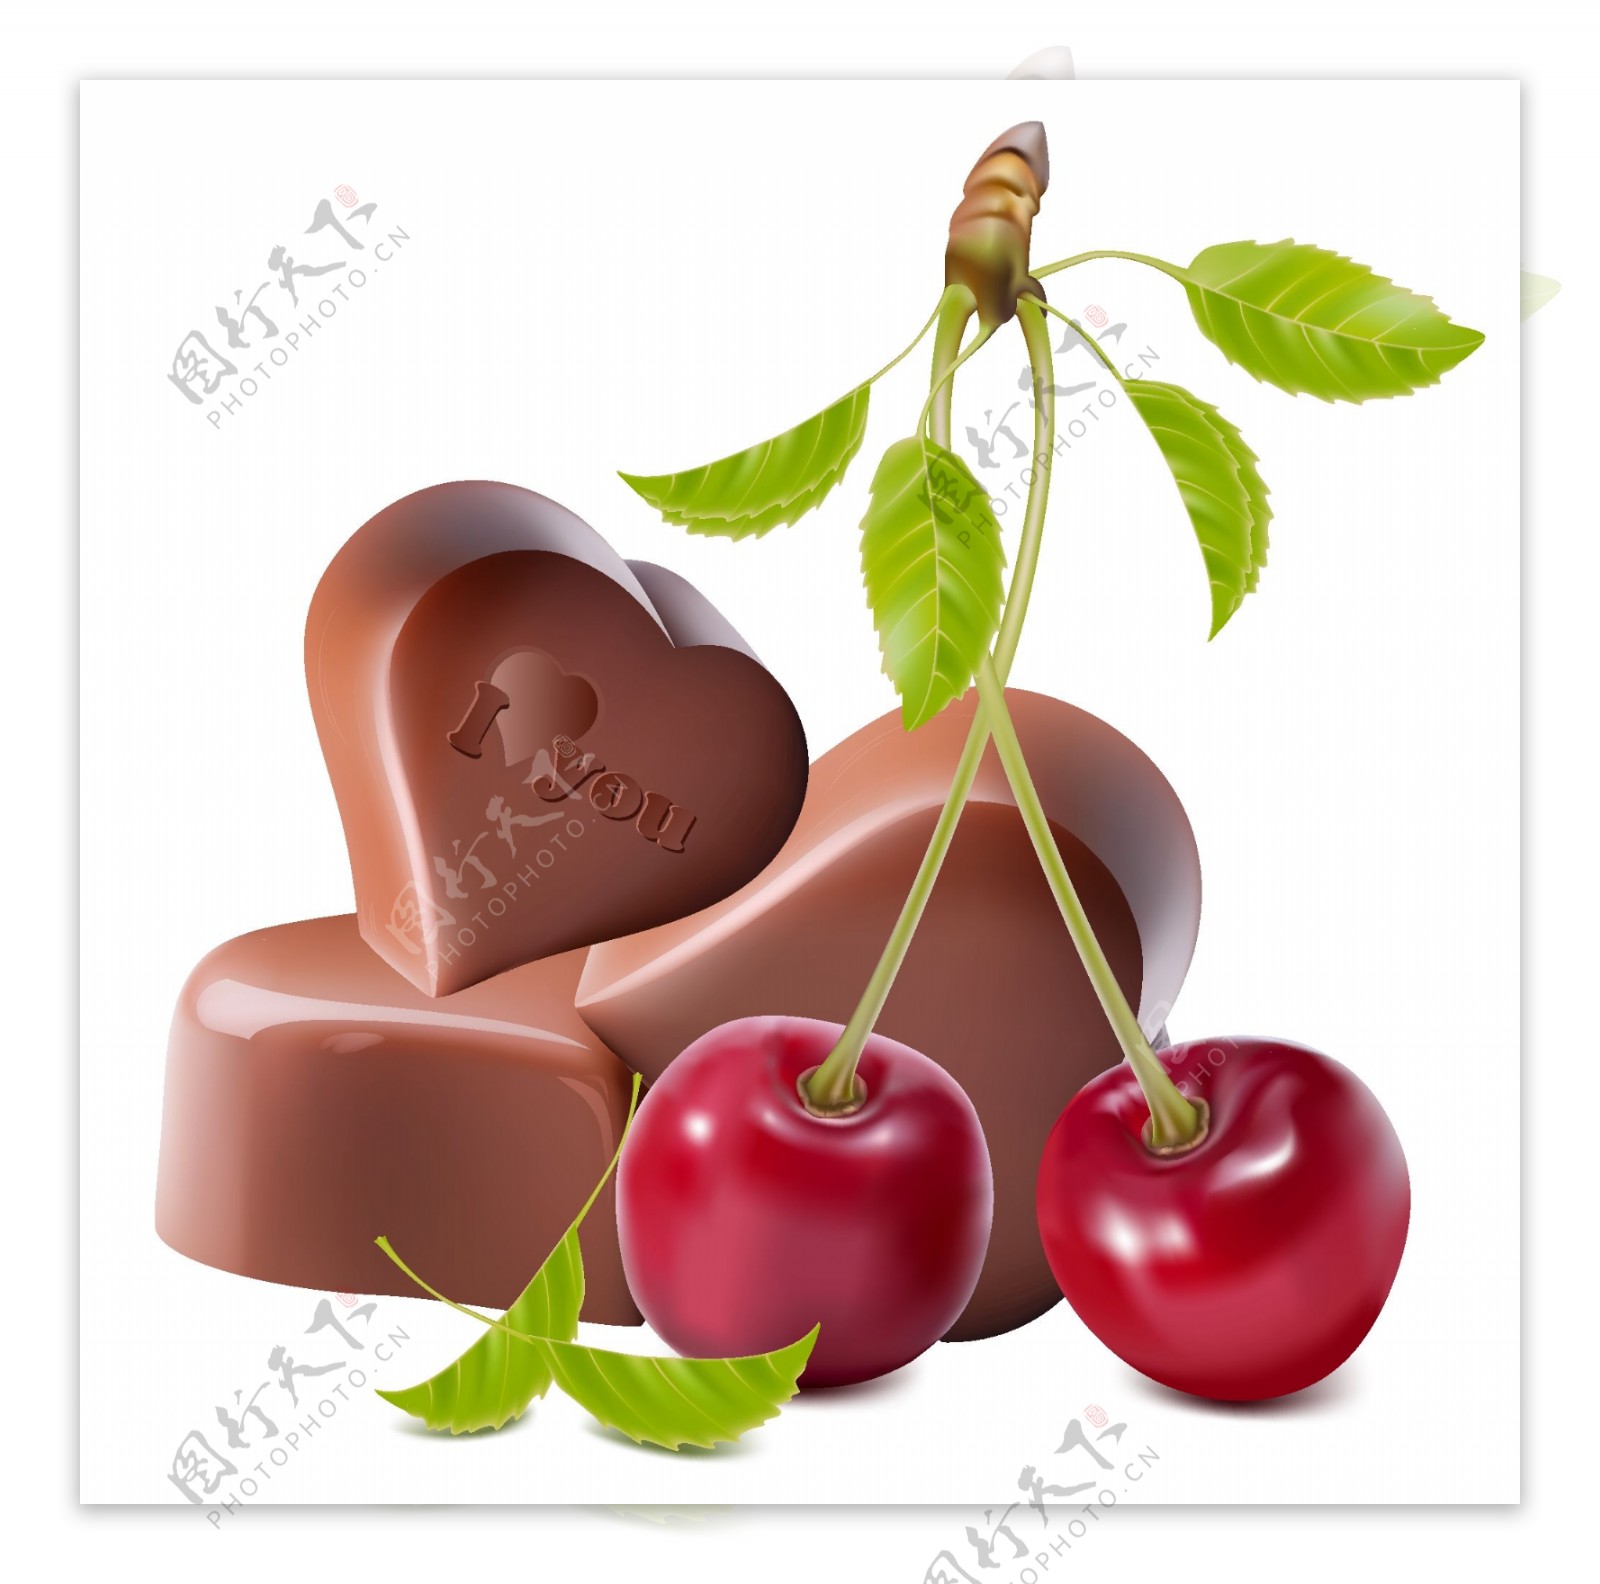 心形巧克力和樱桃矢量素材